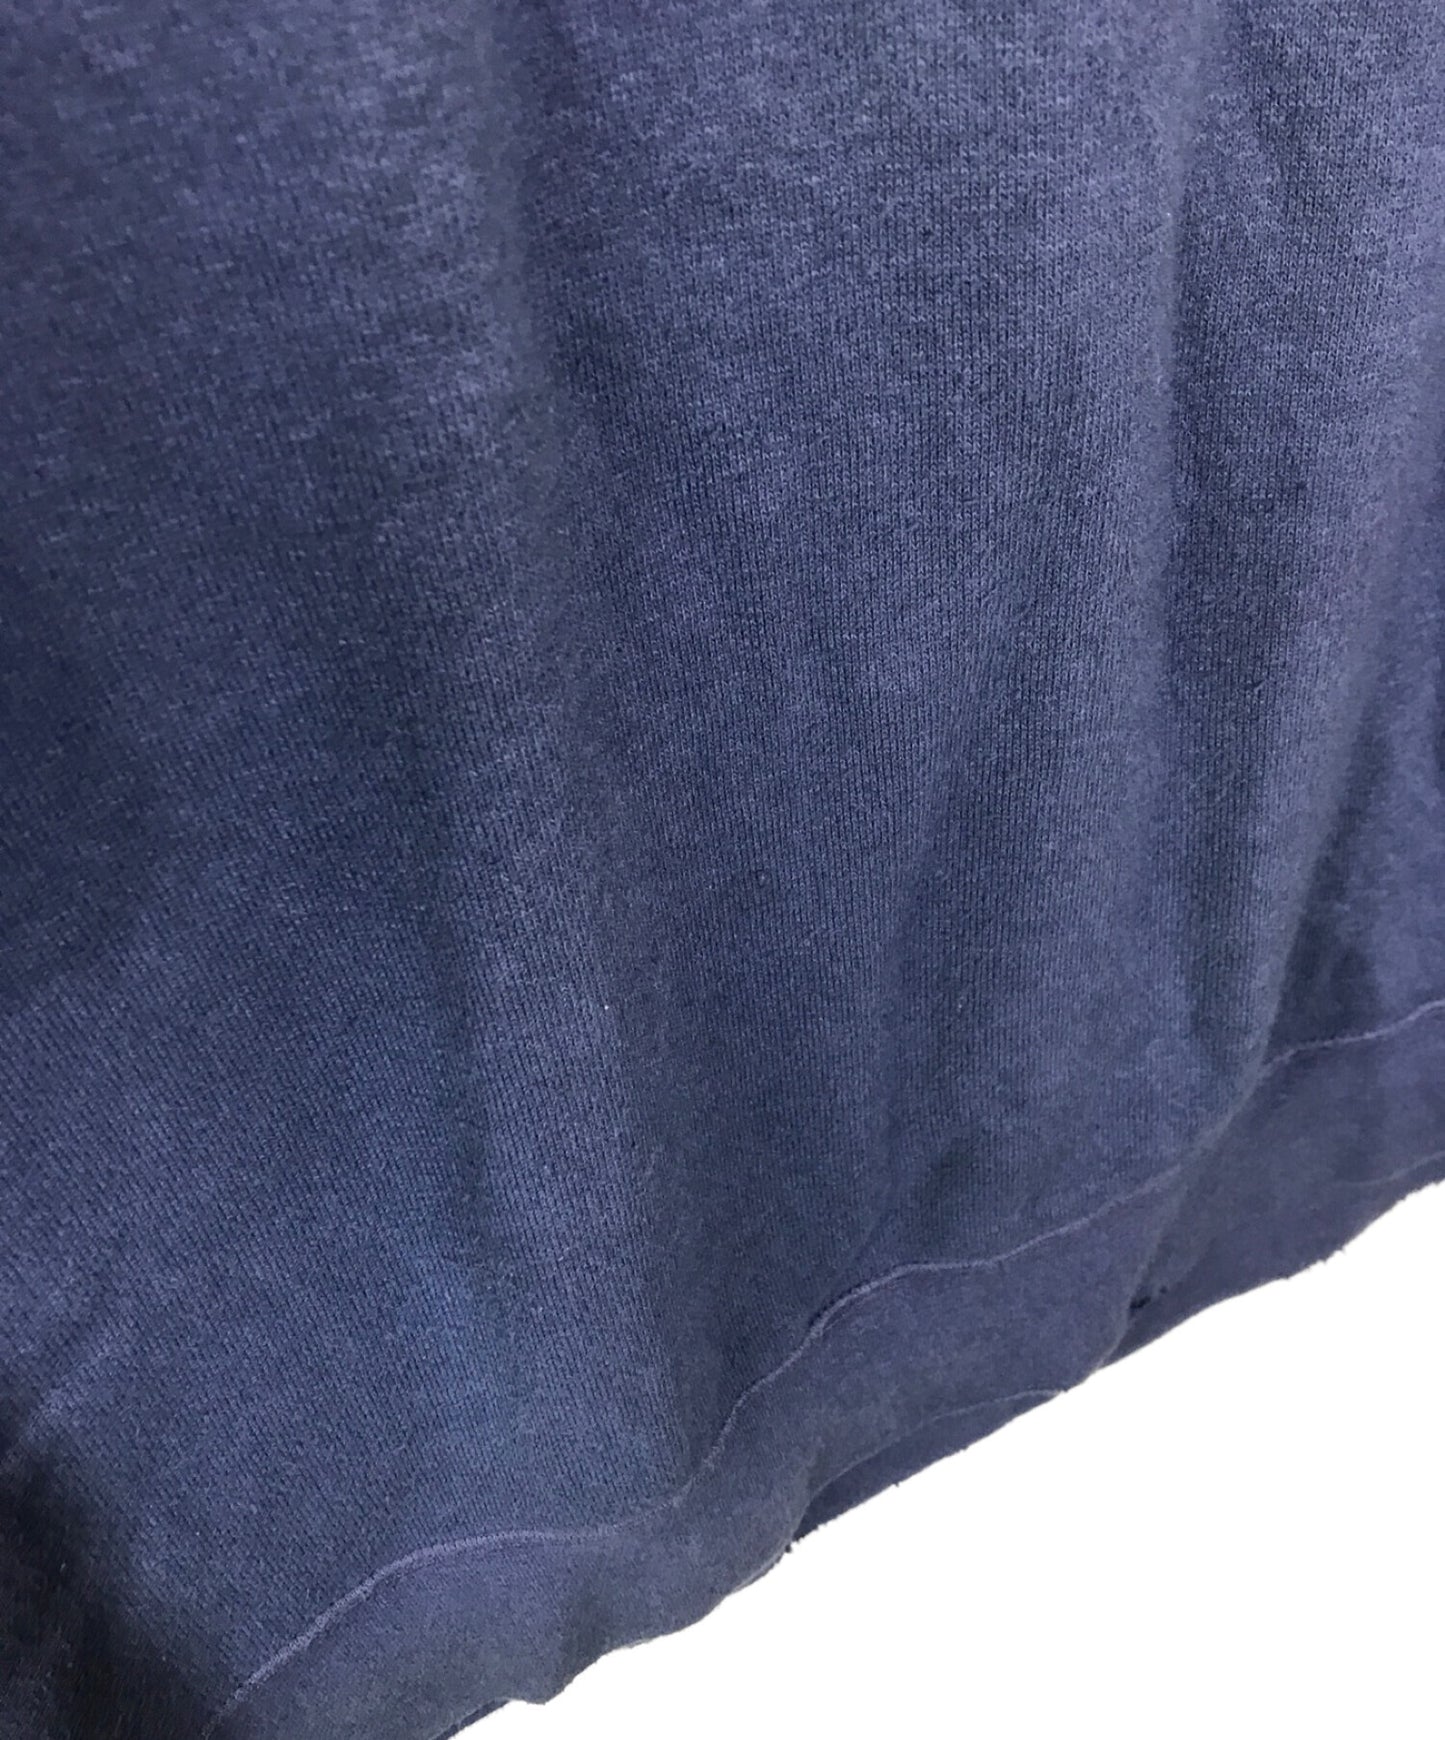 [Pre-owned] VISVIM JUMBO SWEAT 3/4 (UNEVEN DYE) Jumbo Sweatshirt 0121205010010